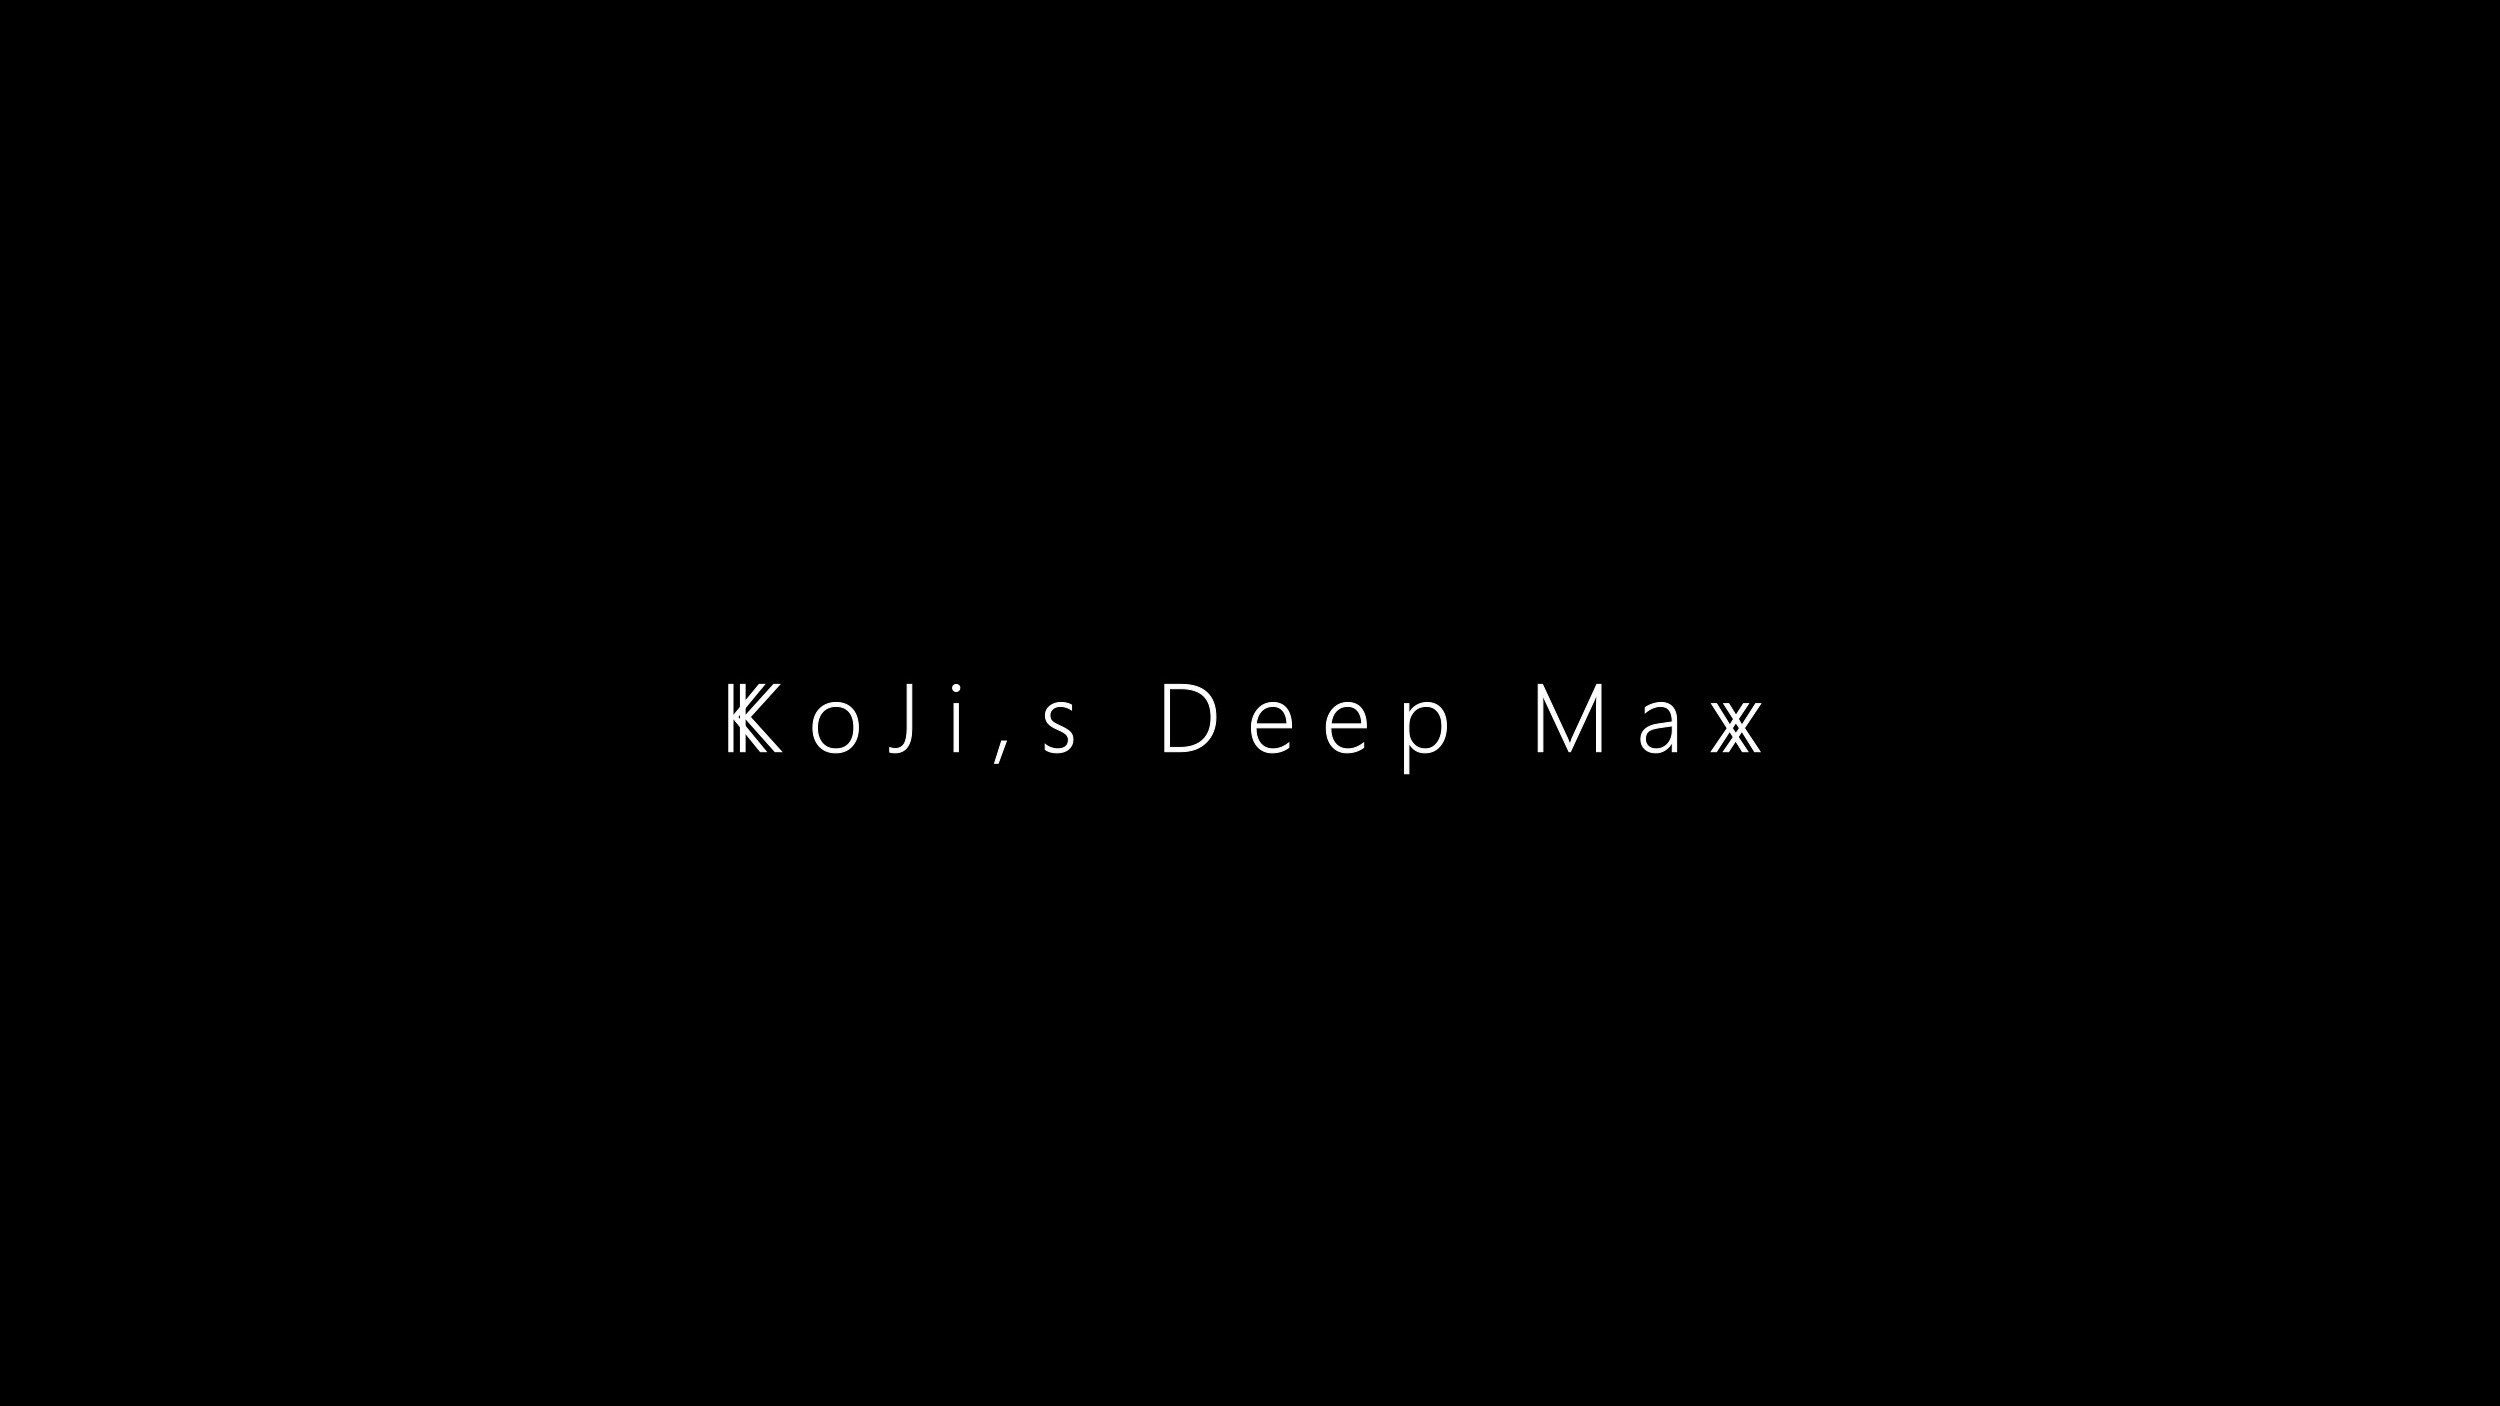 KoJi,s Deep Max